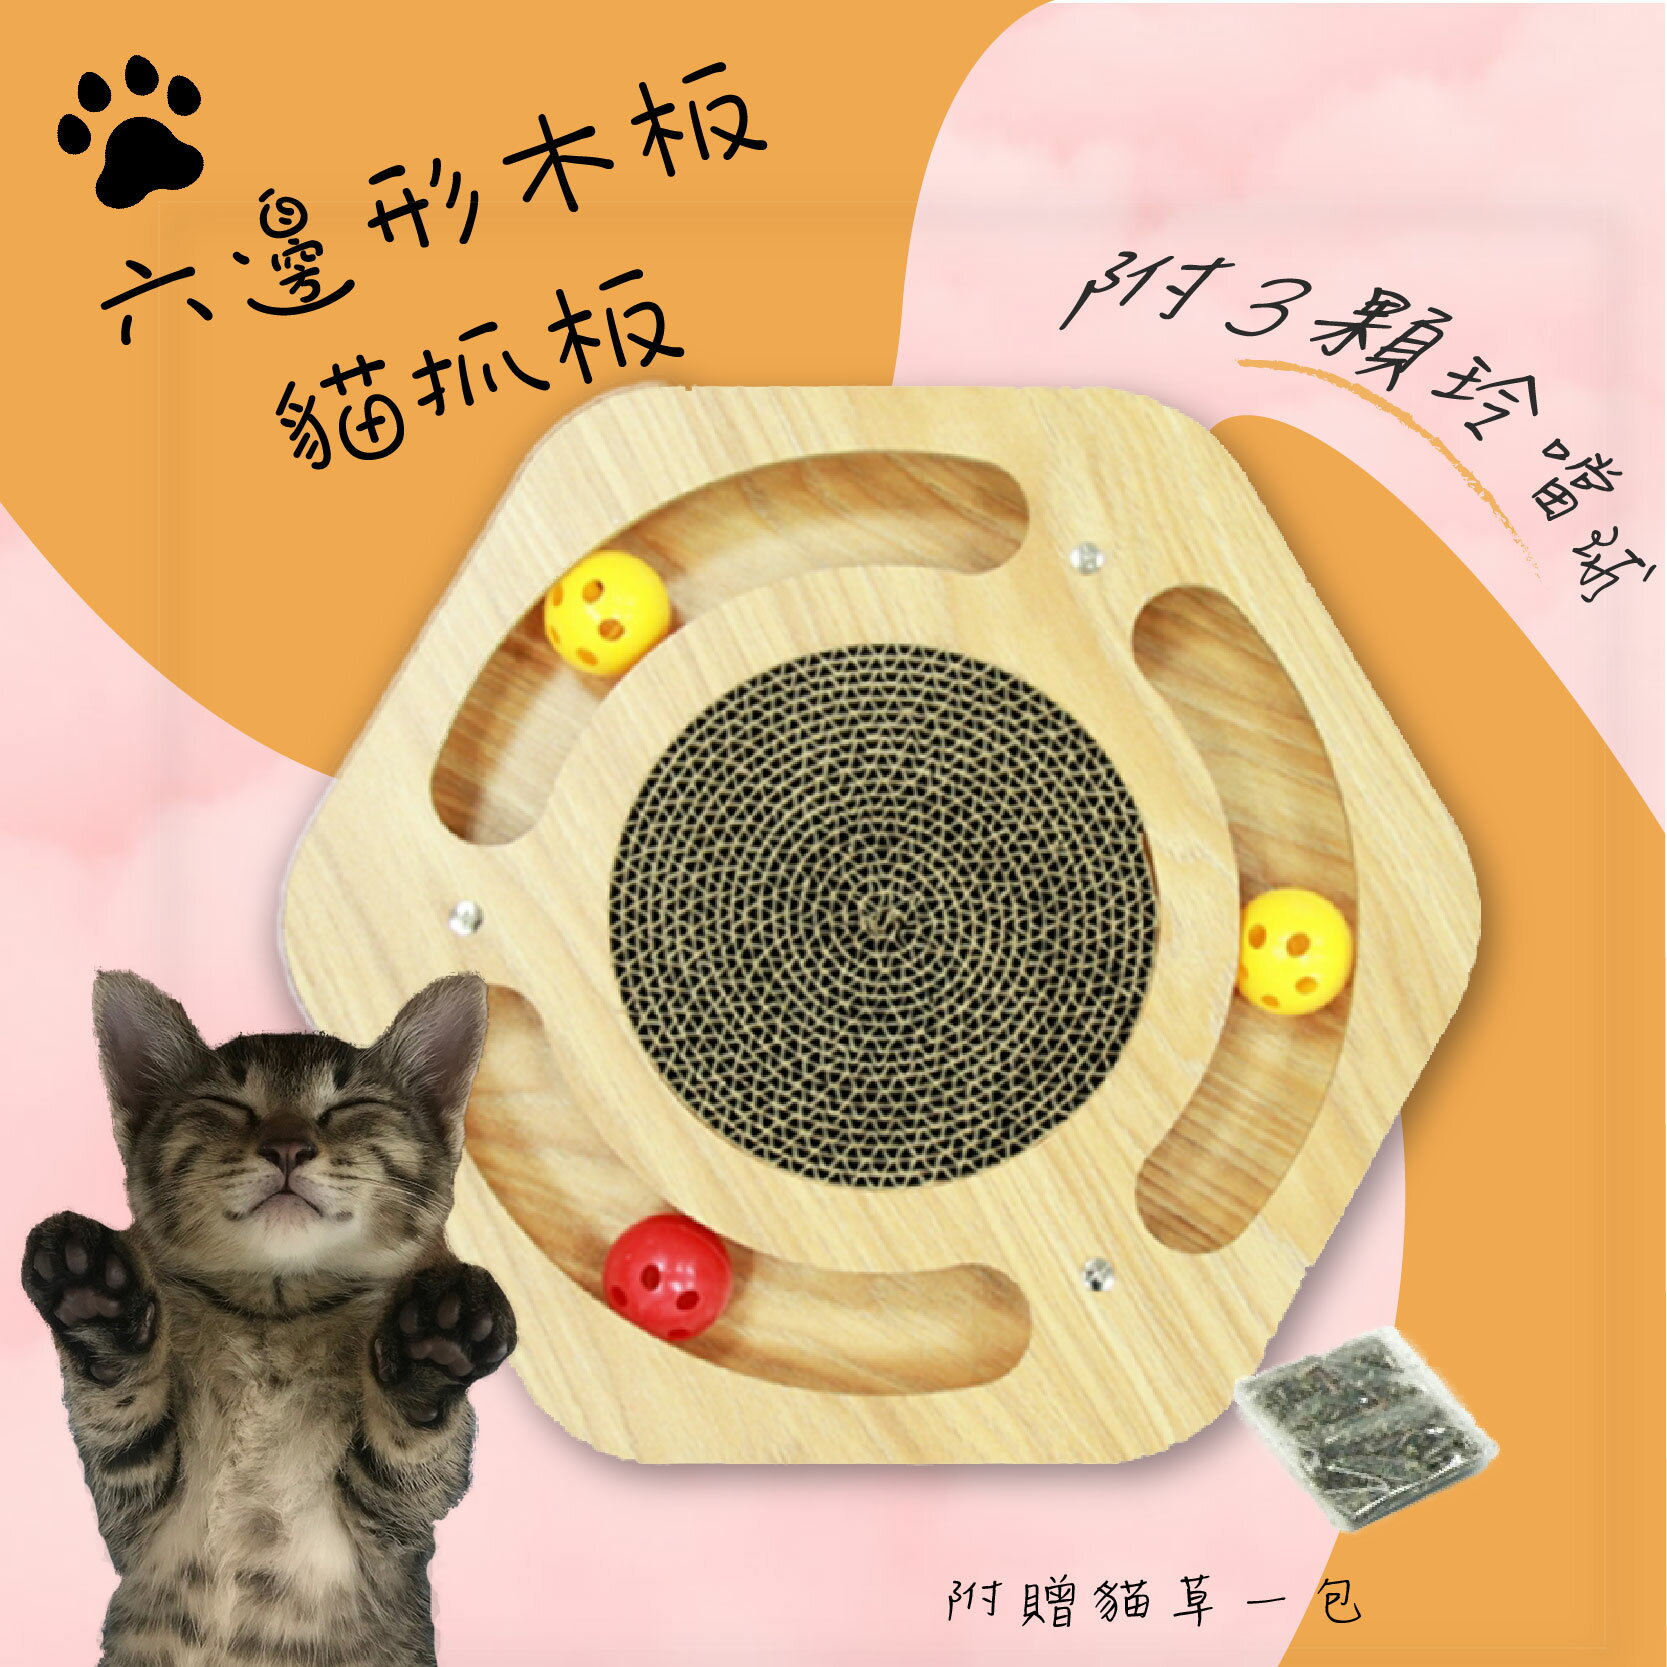 【寵物樂園】六邊形木板貓抓板(附三顆鈴鐺球) 貓抓板 貓玩具 磨爪板 耐磨 耐抓 貓用品 寵物 附貓草 蜂巢式抓板